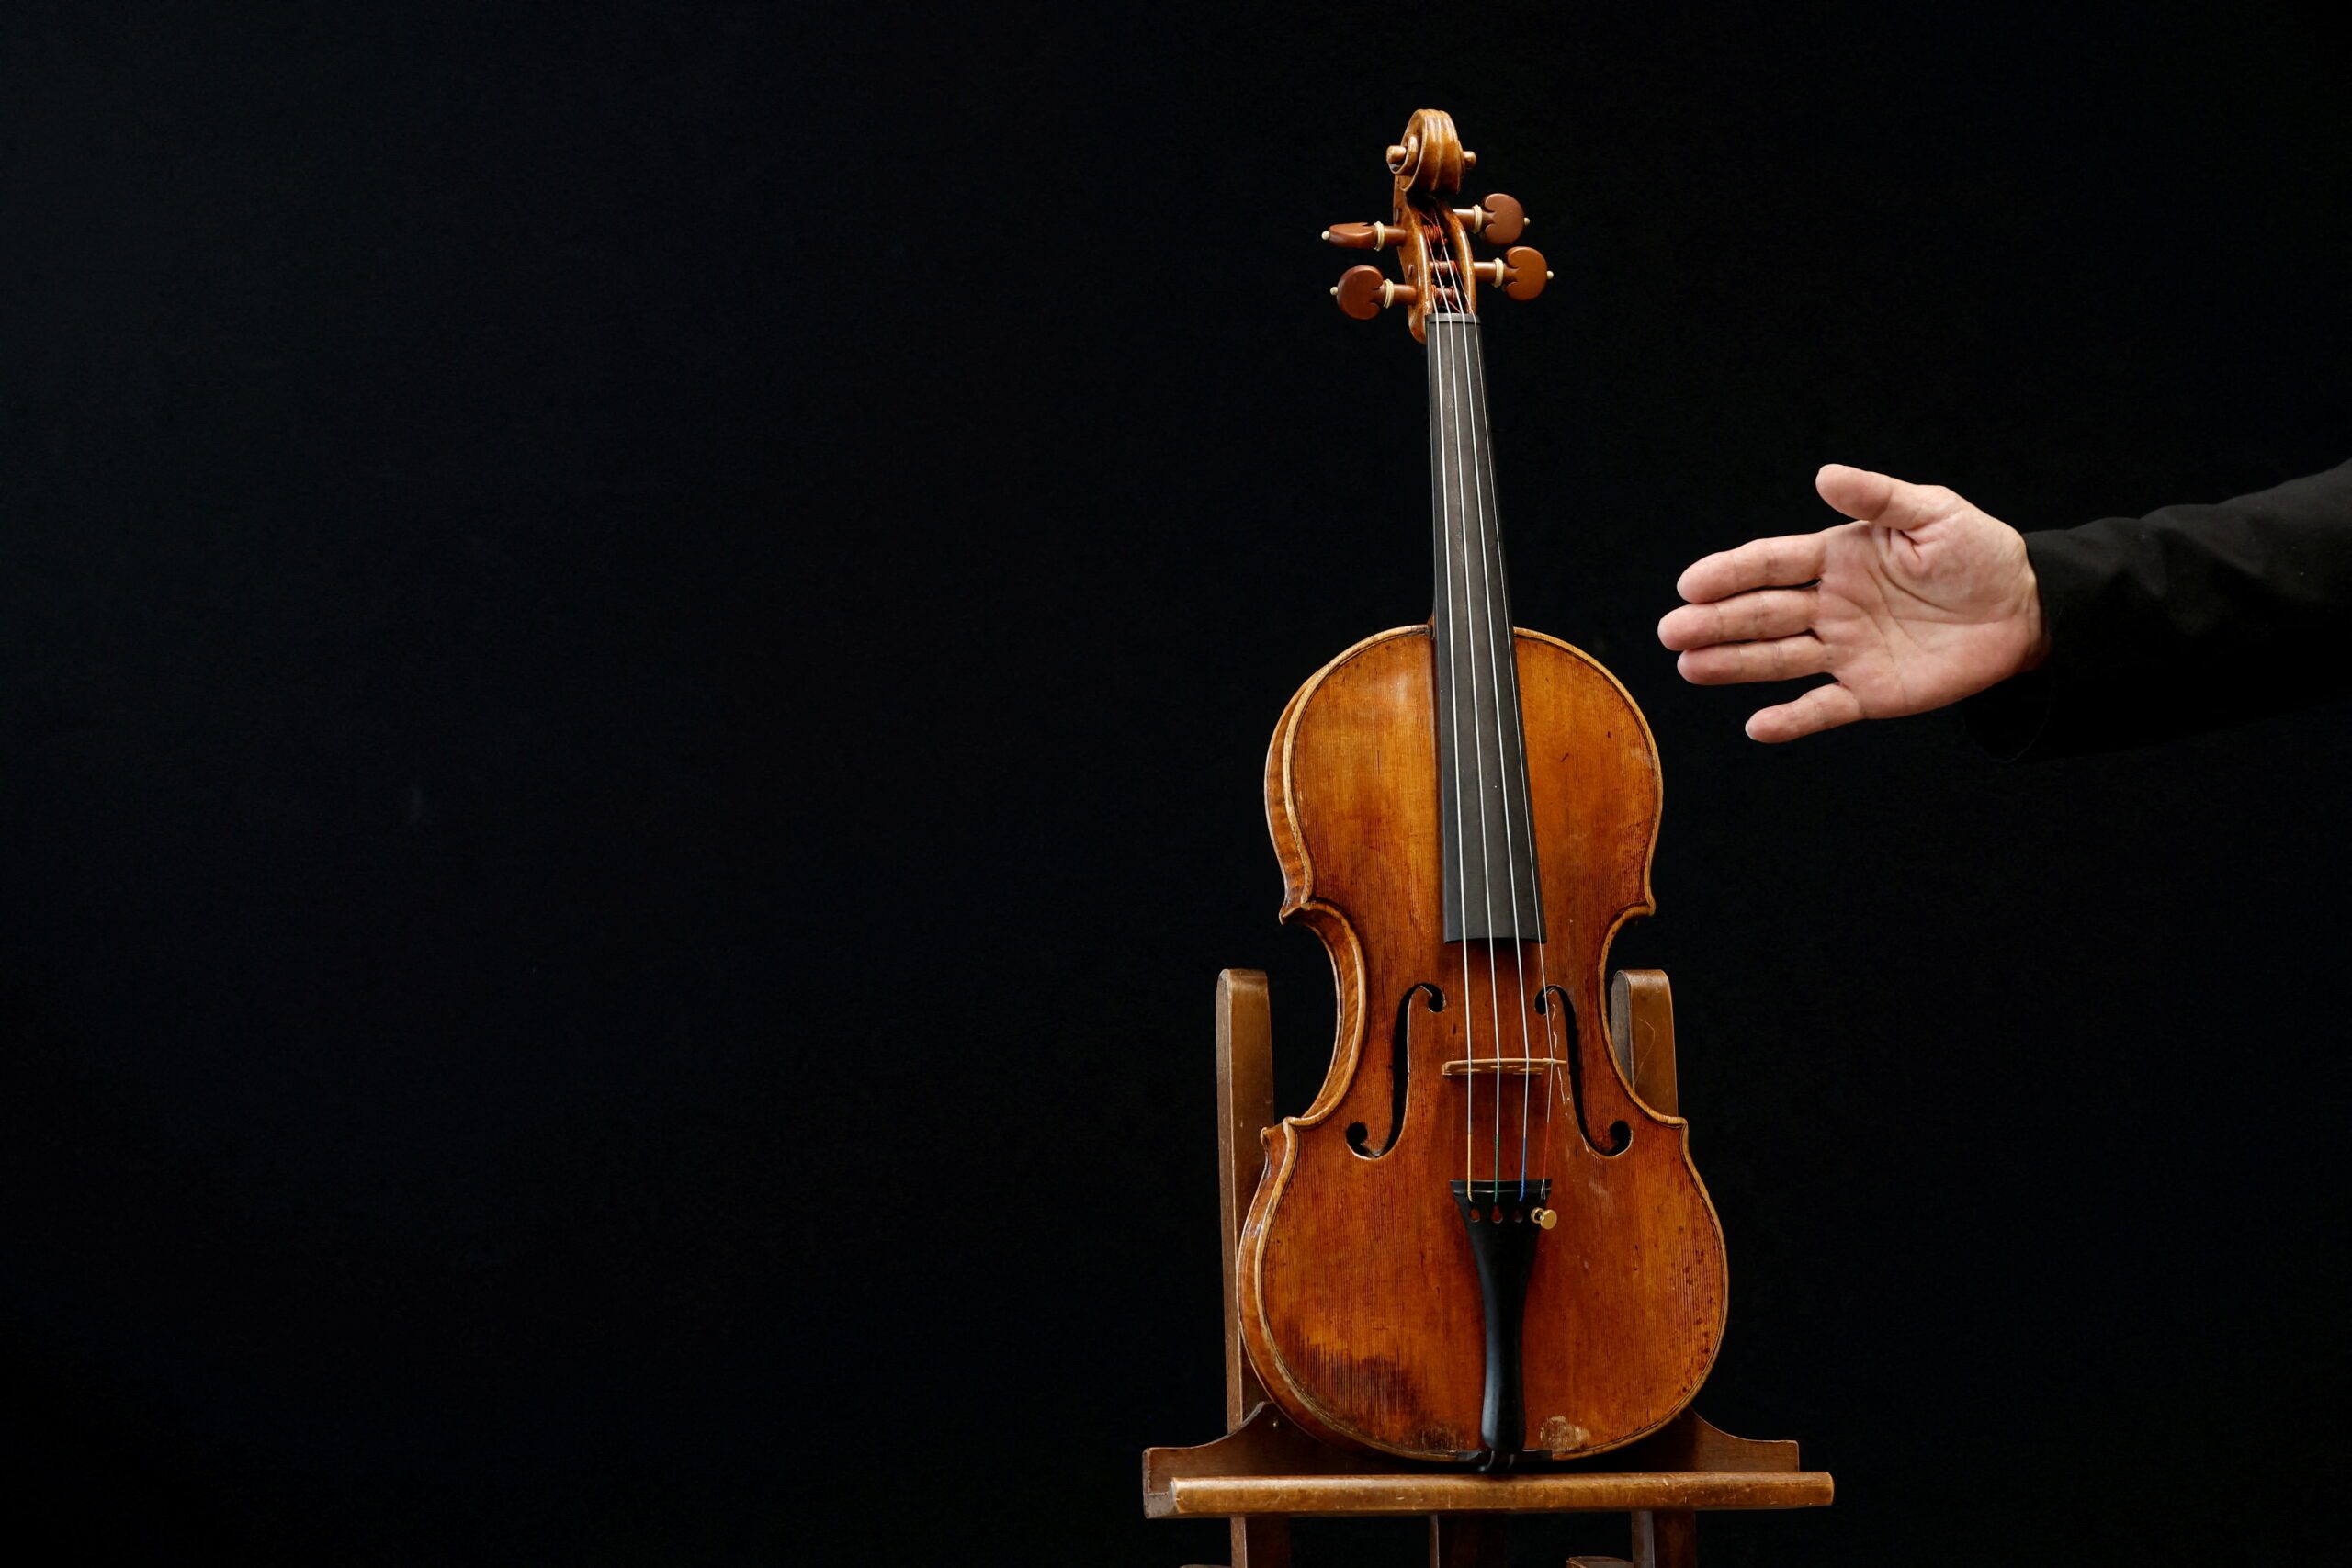 A ‘da Vinci of violins’ goes up for auction in France